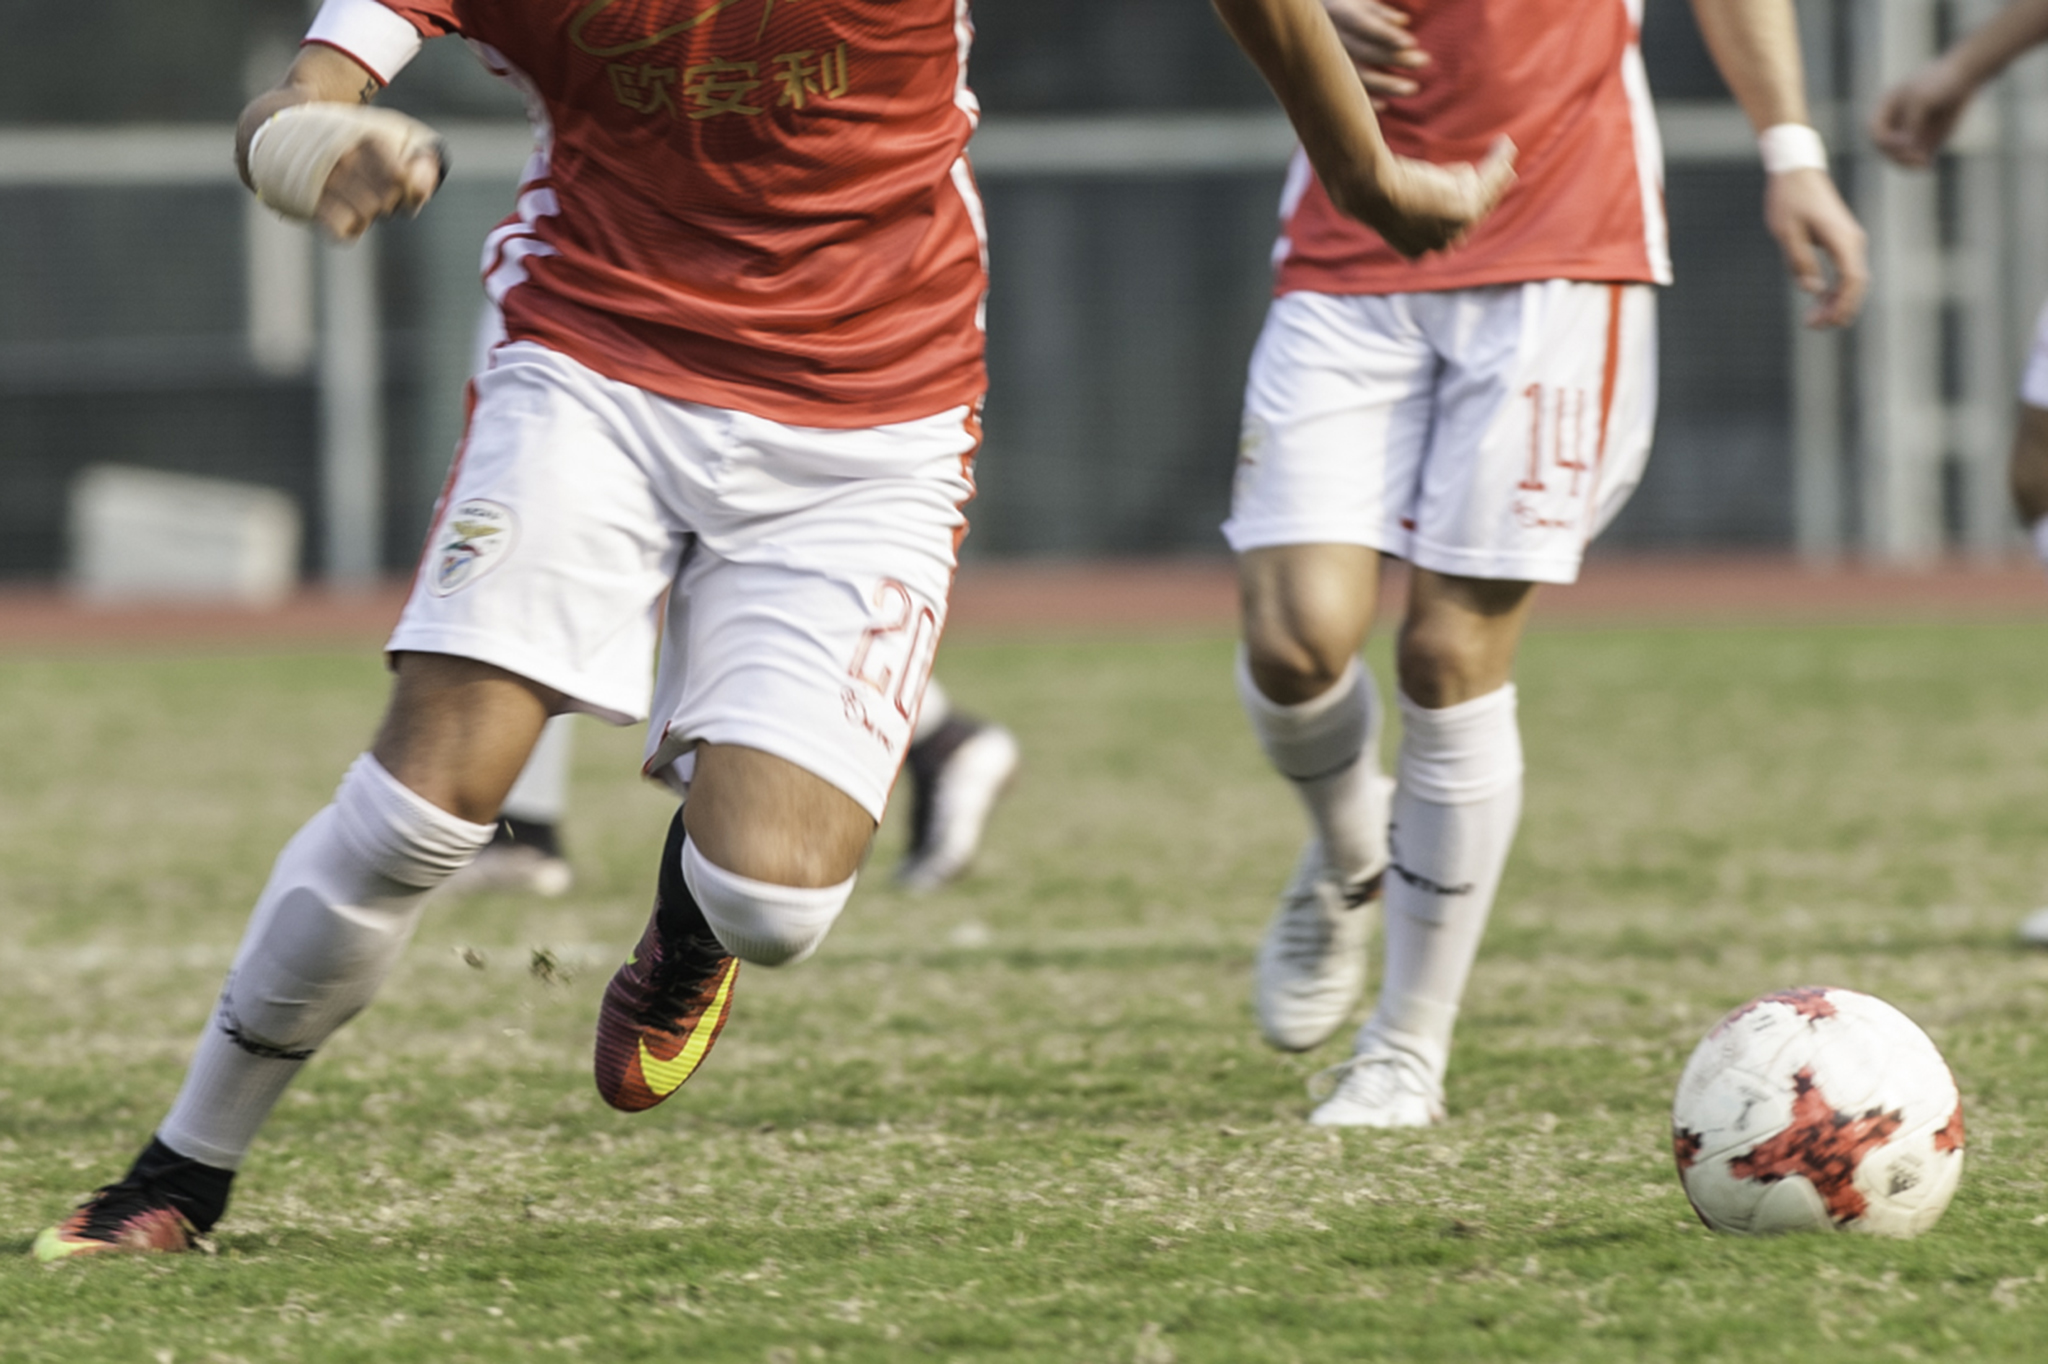 Futebol de Sete | Benfica de Macau impõe derrota ao Ka I por 2-0